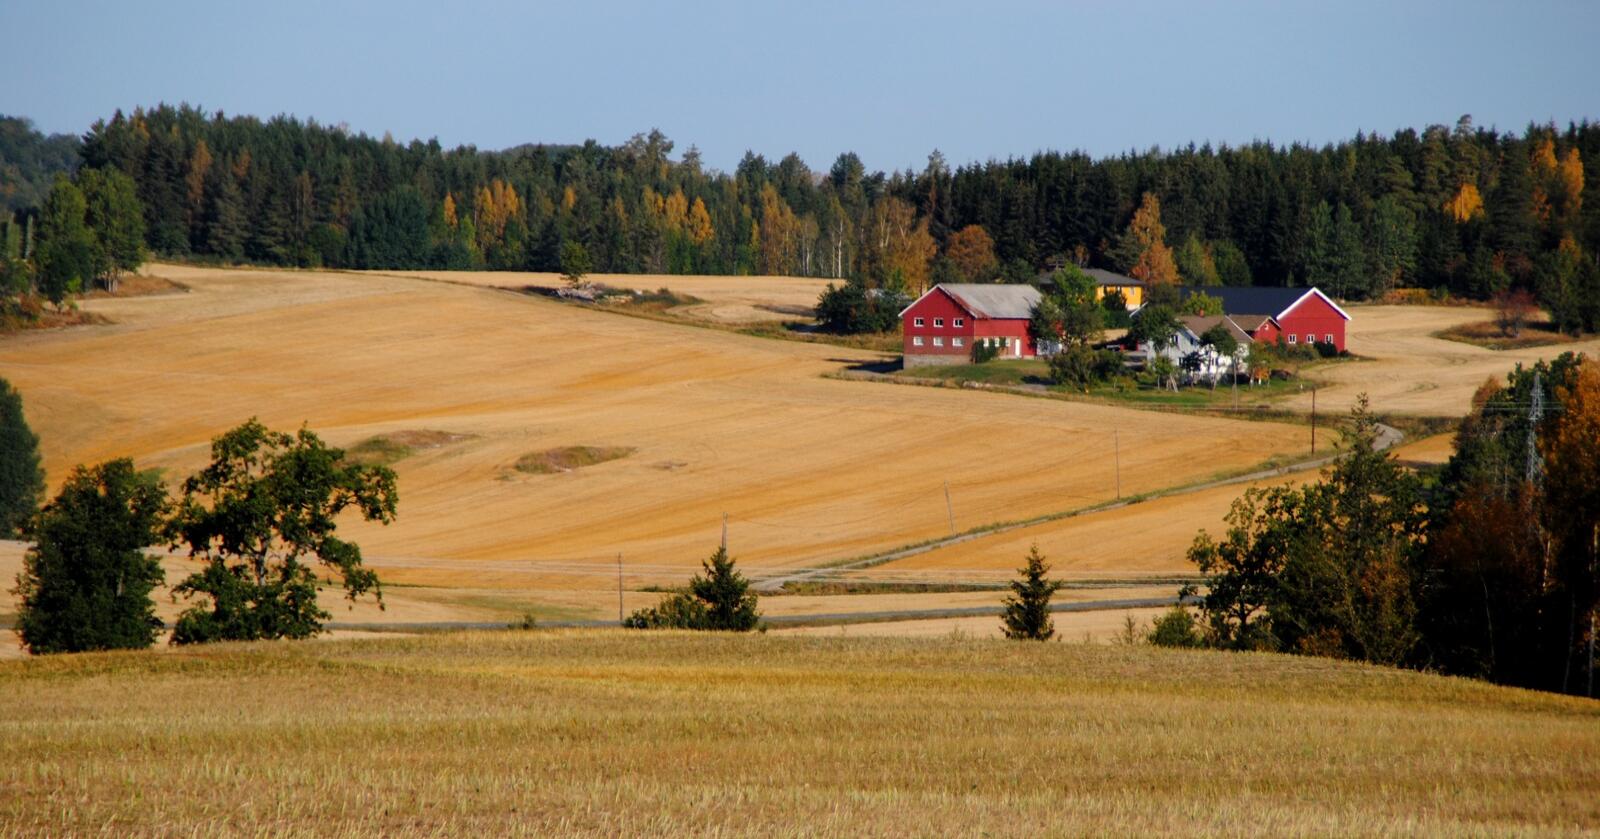 Bønder får kriseutbetaling i september, men trenger ikke å søke om det. Foto: Lars Bilit Hagen